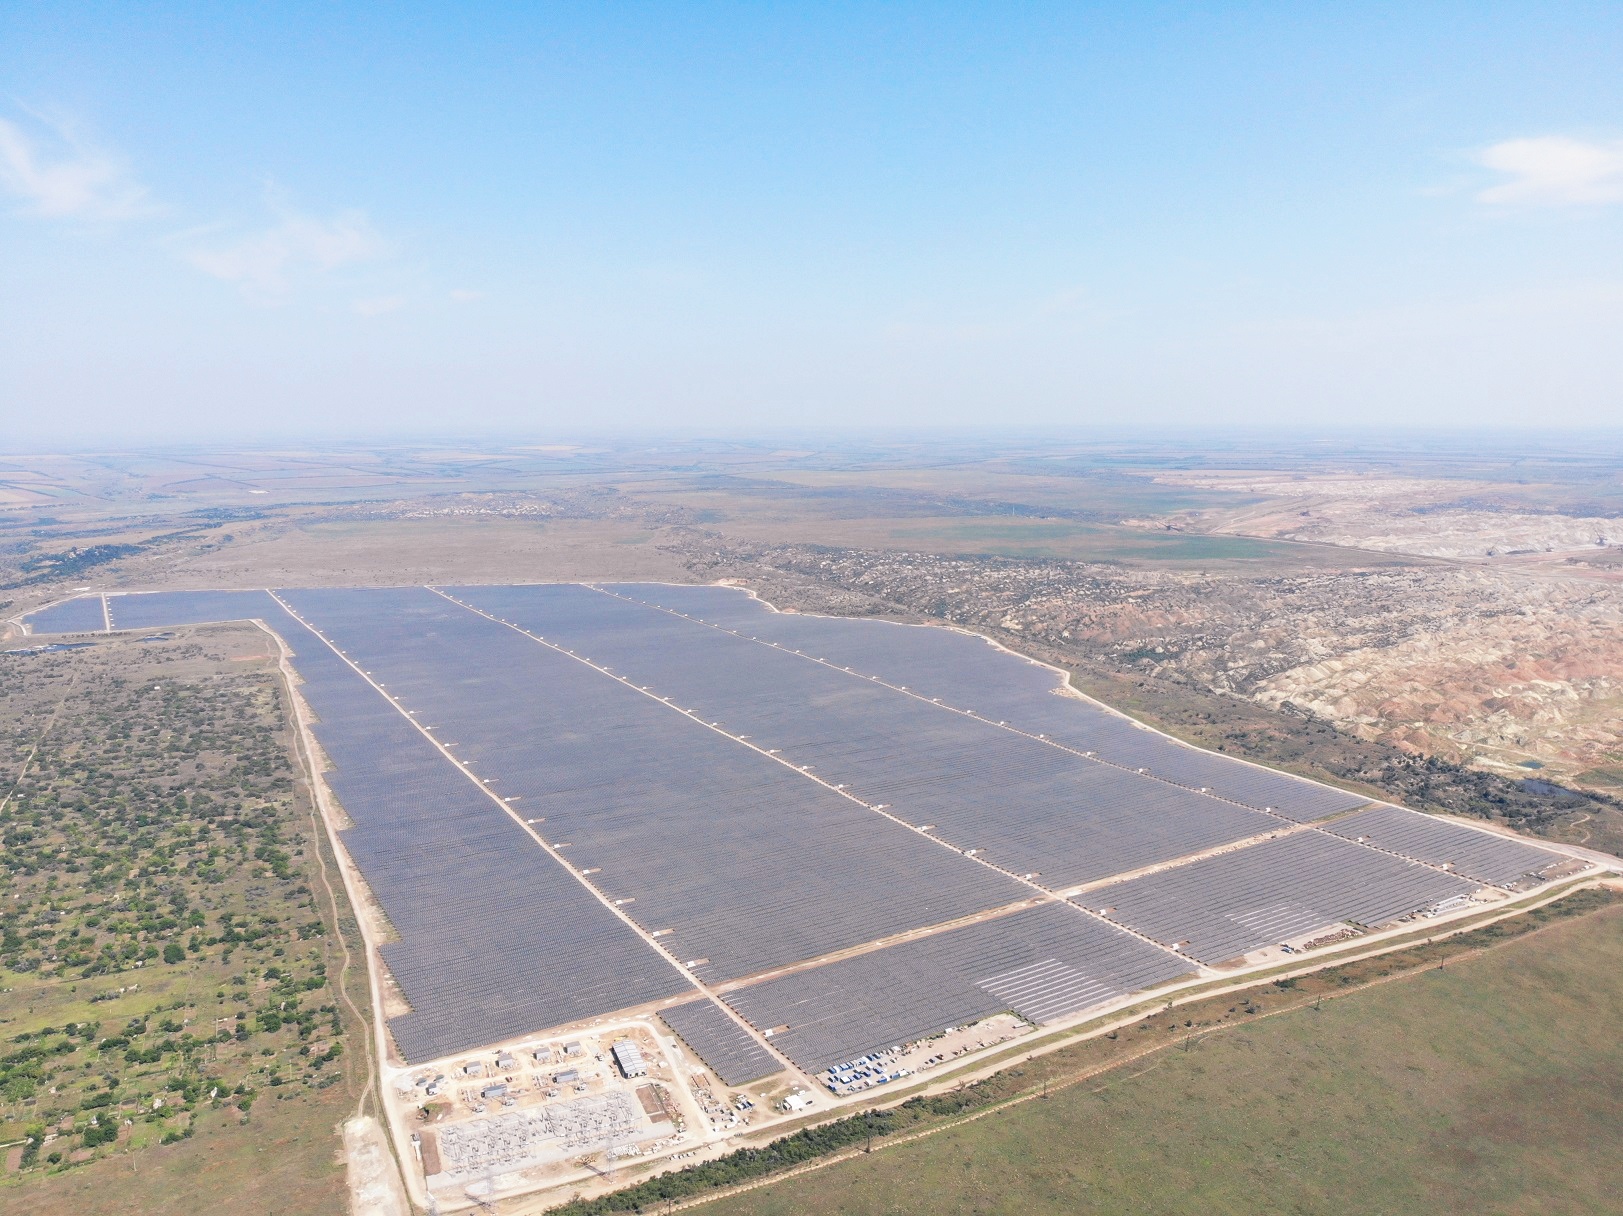 ДТЕК запустив другу за потужністю в Європі сонячну електростанцію